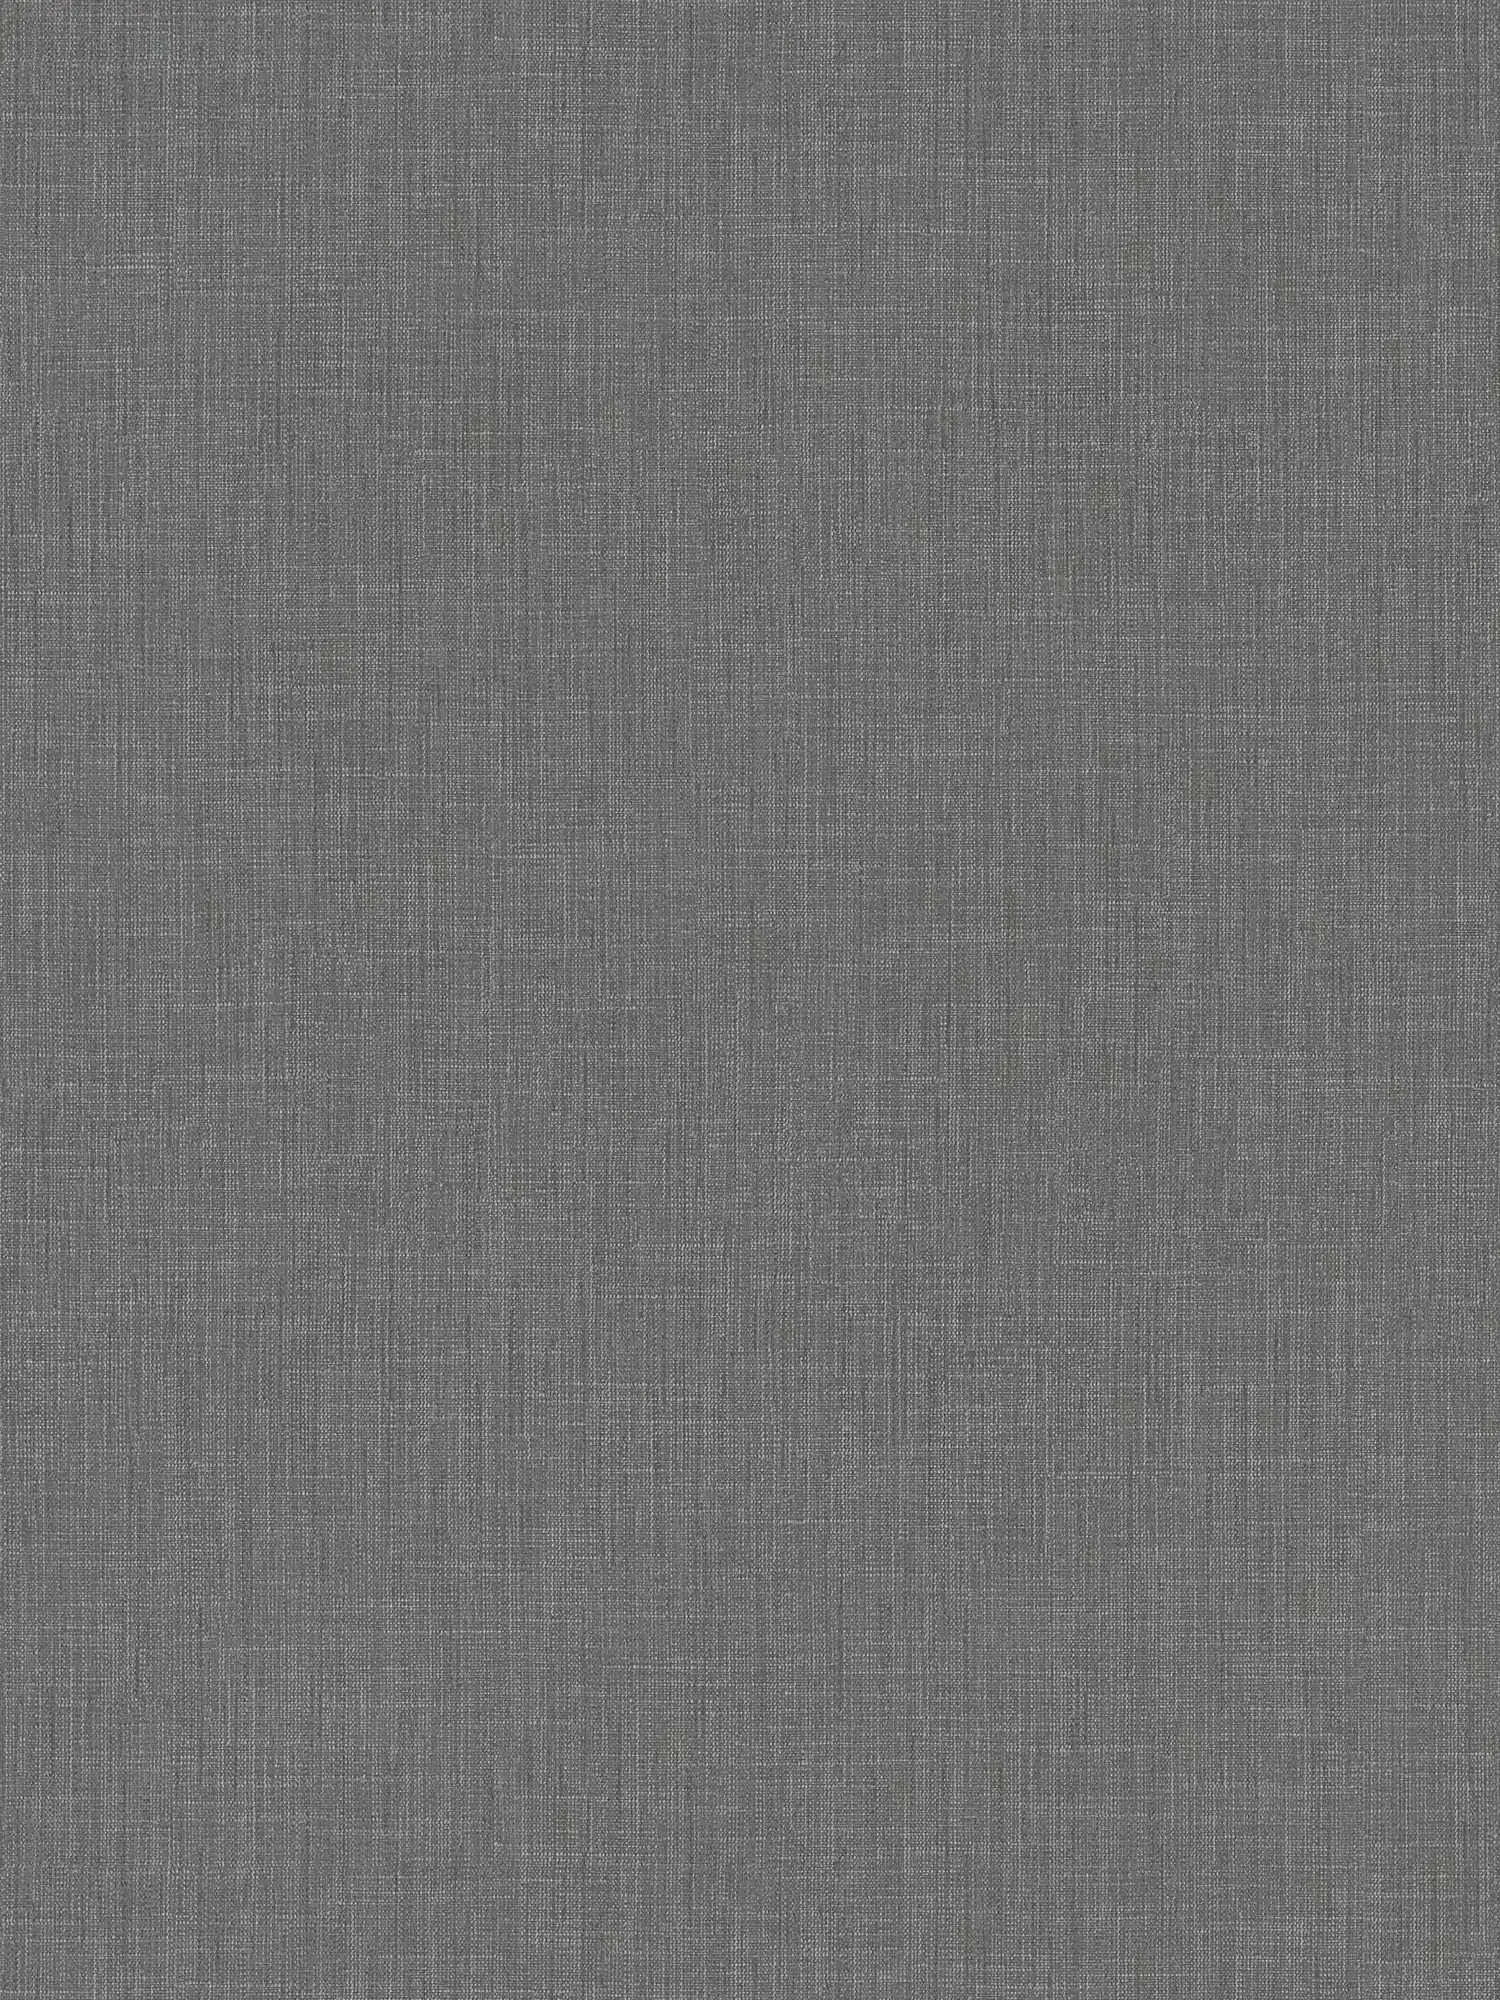 Papier peint gris chiné avec design textile style bouclé
